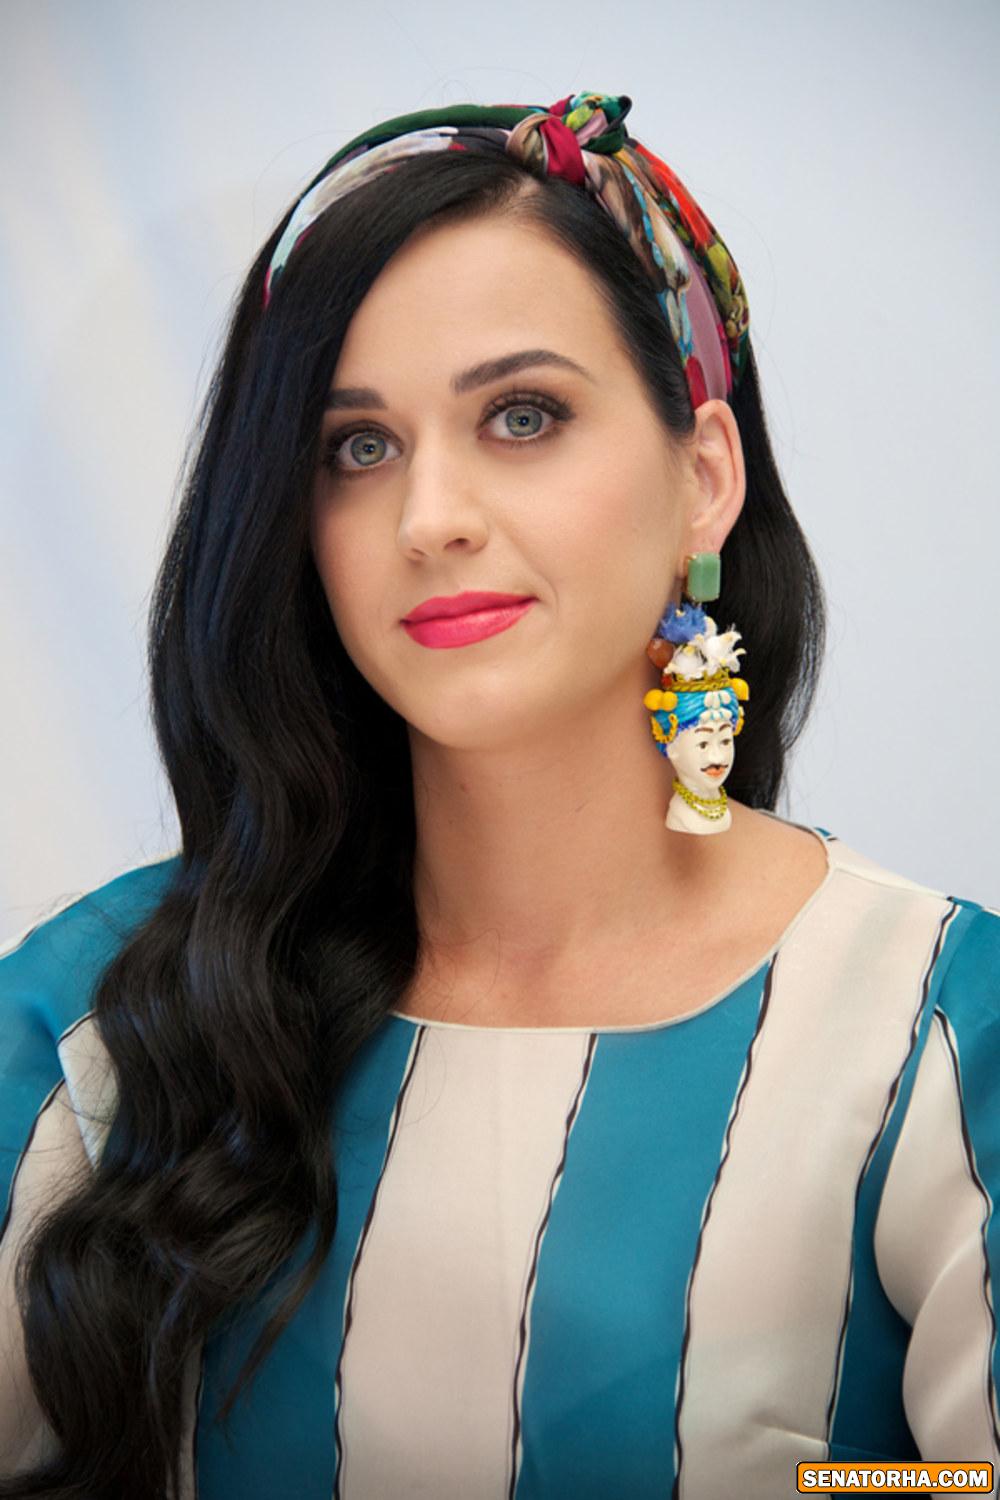 عکس های کتی پری خواننده زن امریکایی  (Katy Perry)